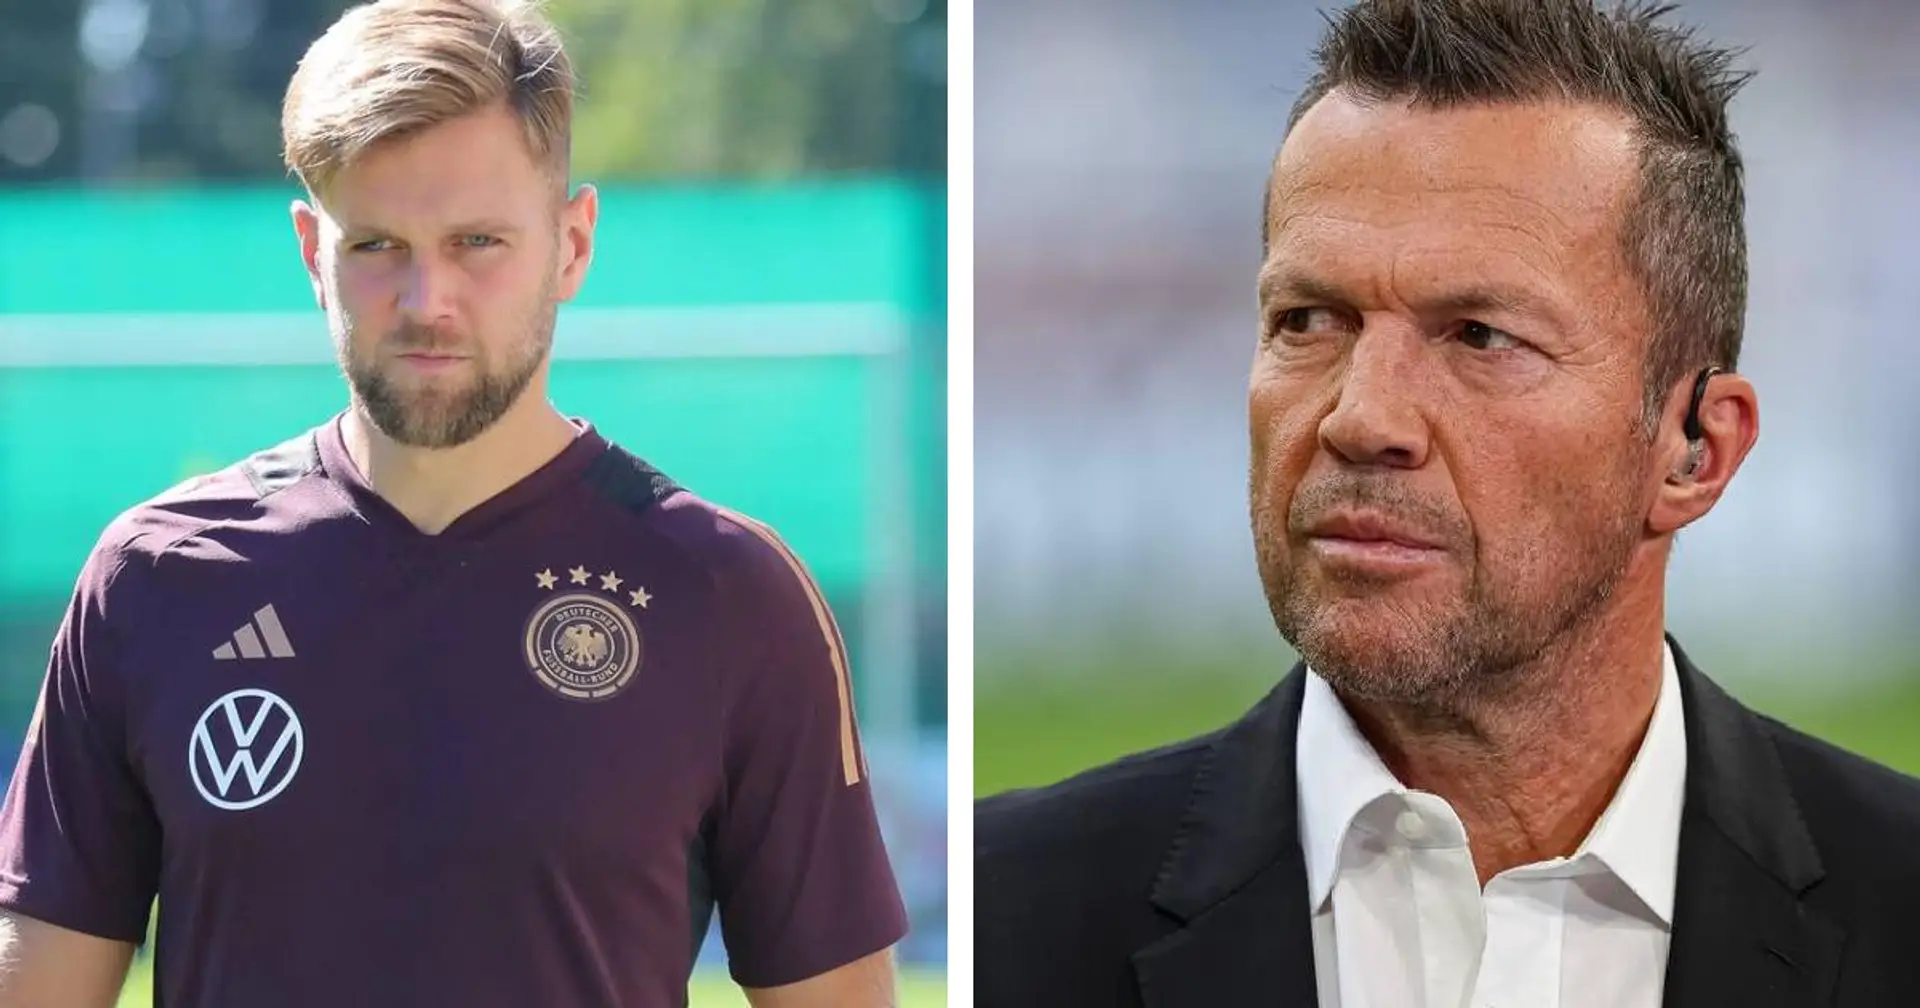 Kein BVB-Spieler in Matthäus' Wunsch-Elf für EM 2024: Lothar sieht Füllkrug nur als Joker